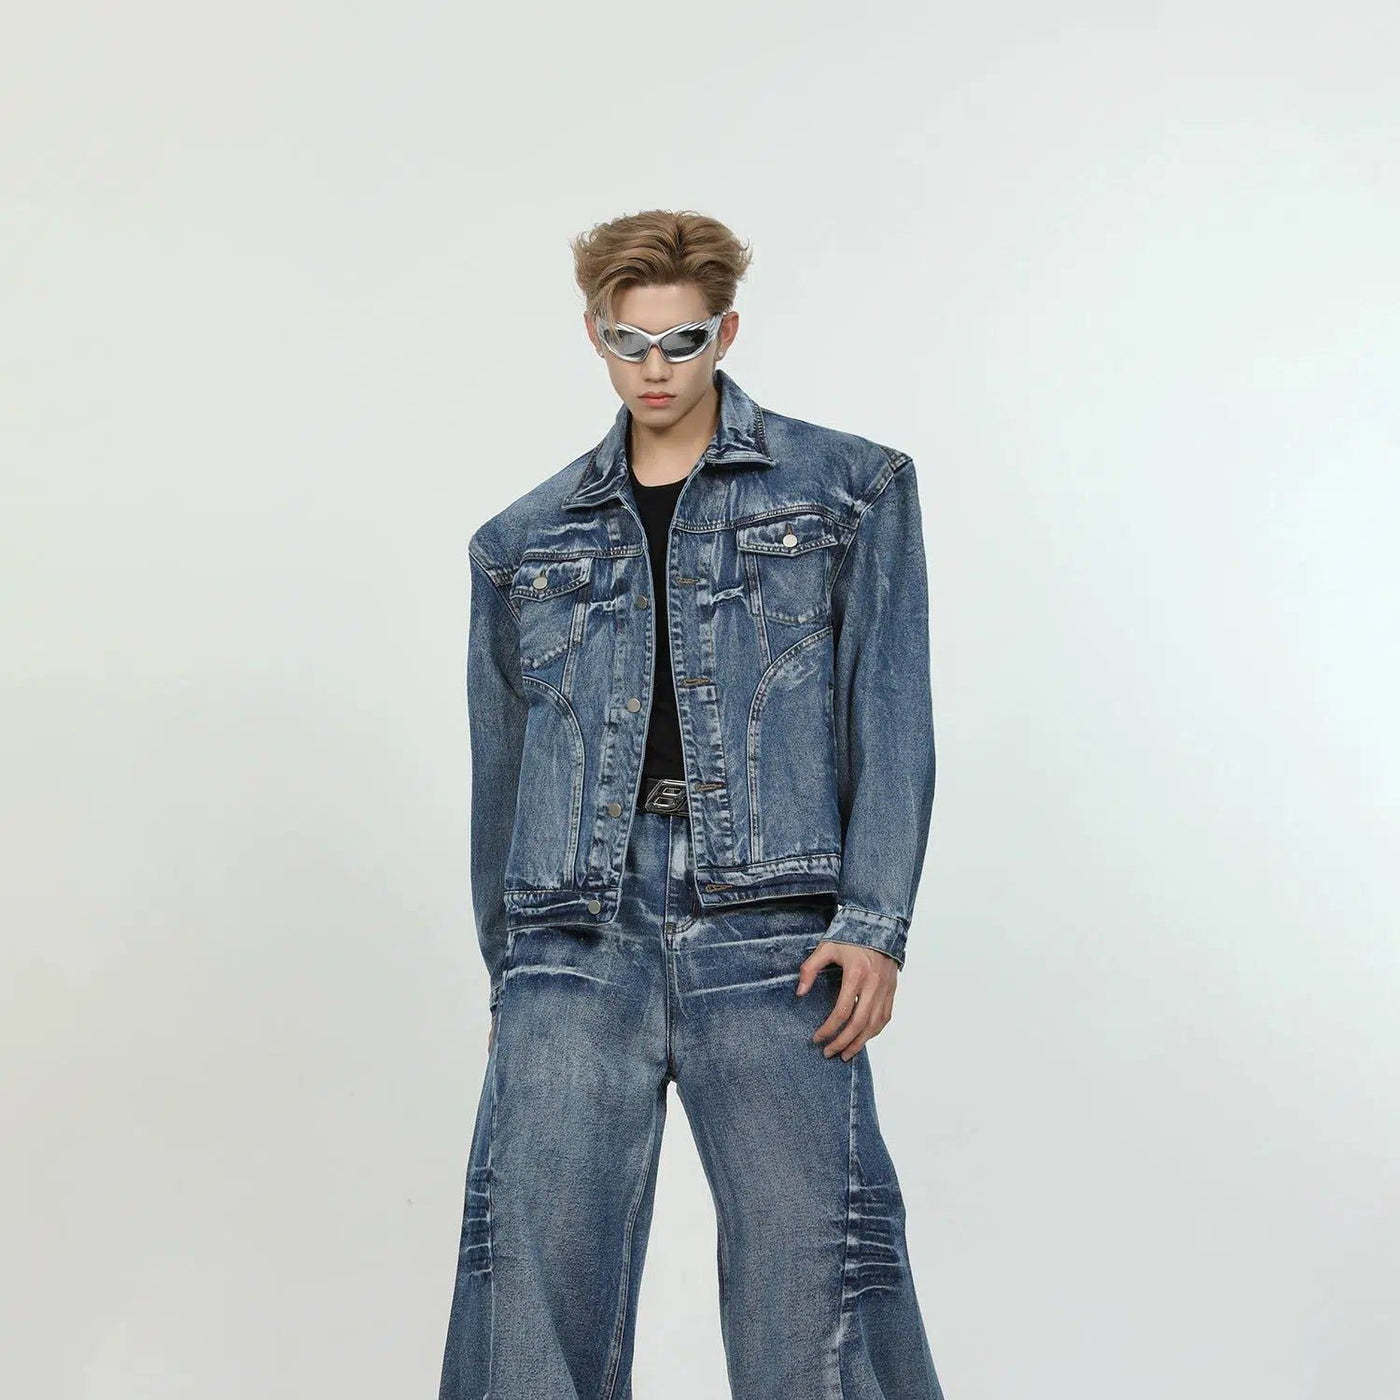 Washed Denim Jacket & Wide Jeans Set Korean Street Fashion Clothing Set By Turn Tide Shop Online at OH Vault